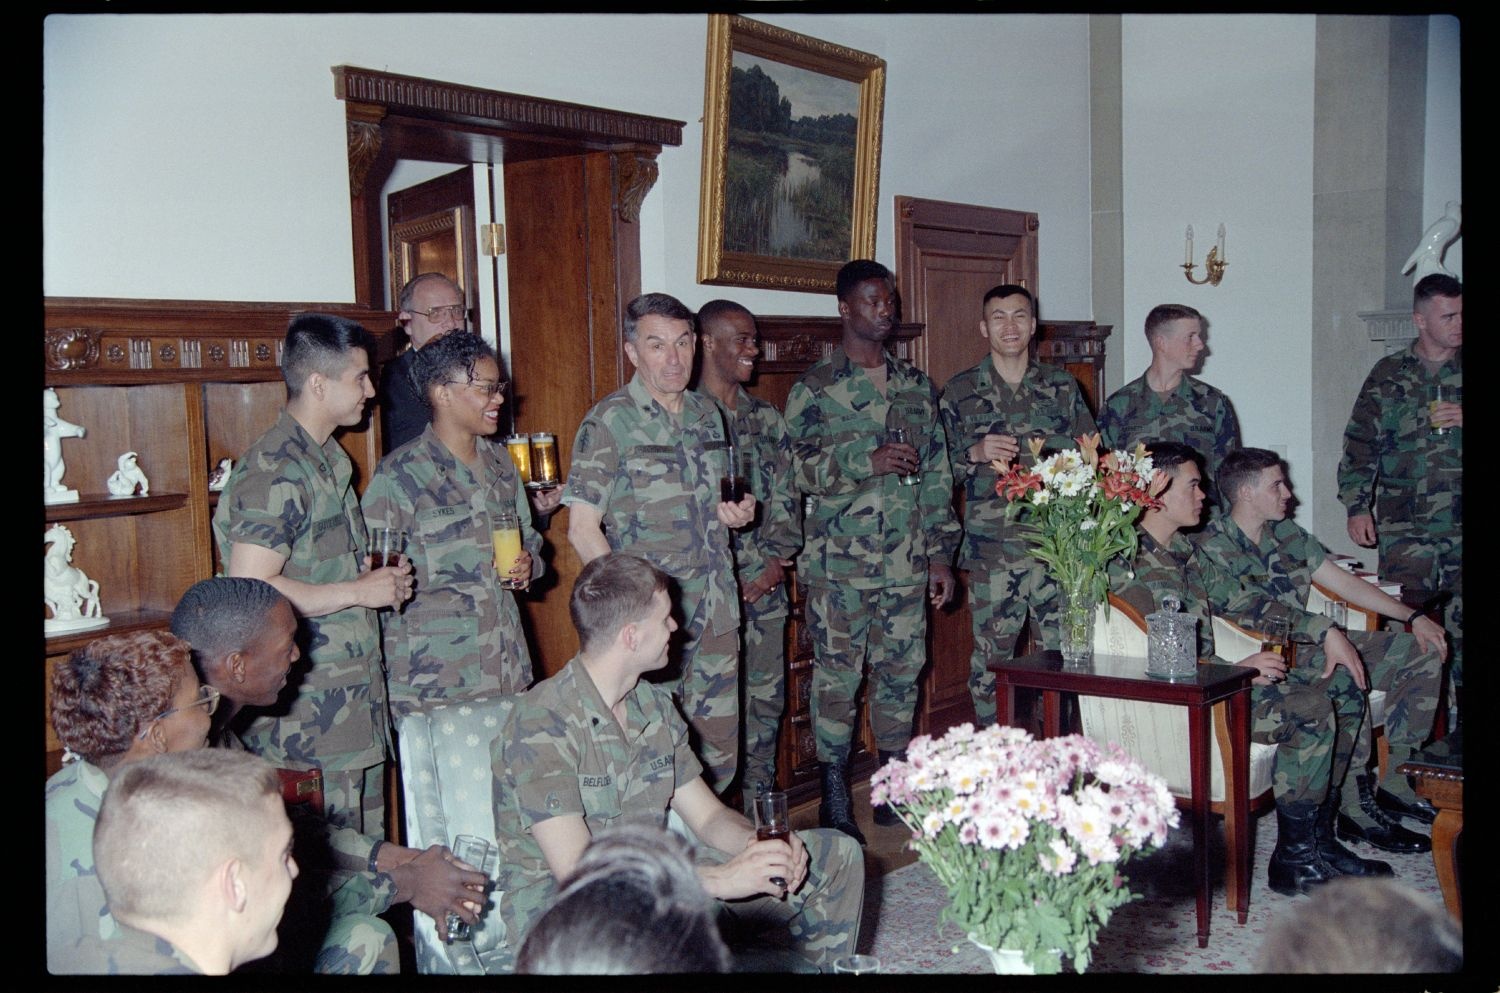 Fotografie: Soldaten der U.S. Army Berlin Brigade zu Besuch in der Residenz von Brigadier General Sidney Shachnow in Berlin-Dahlem